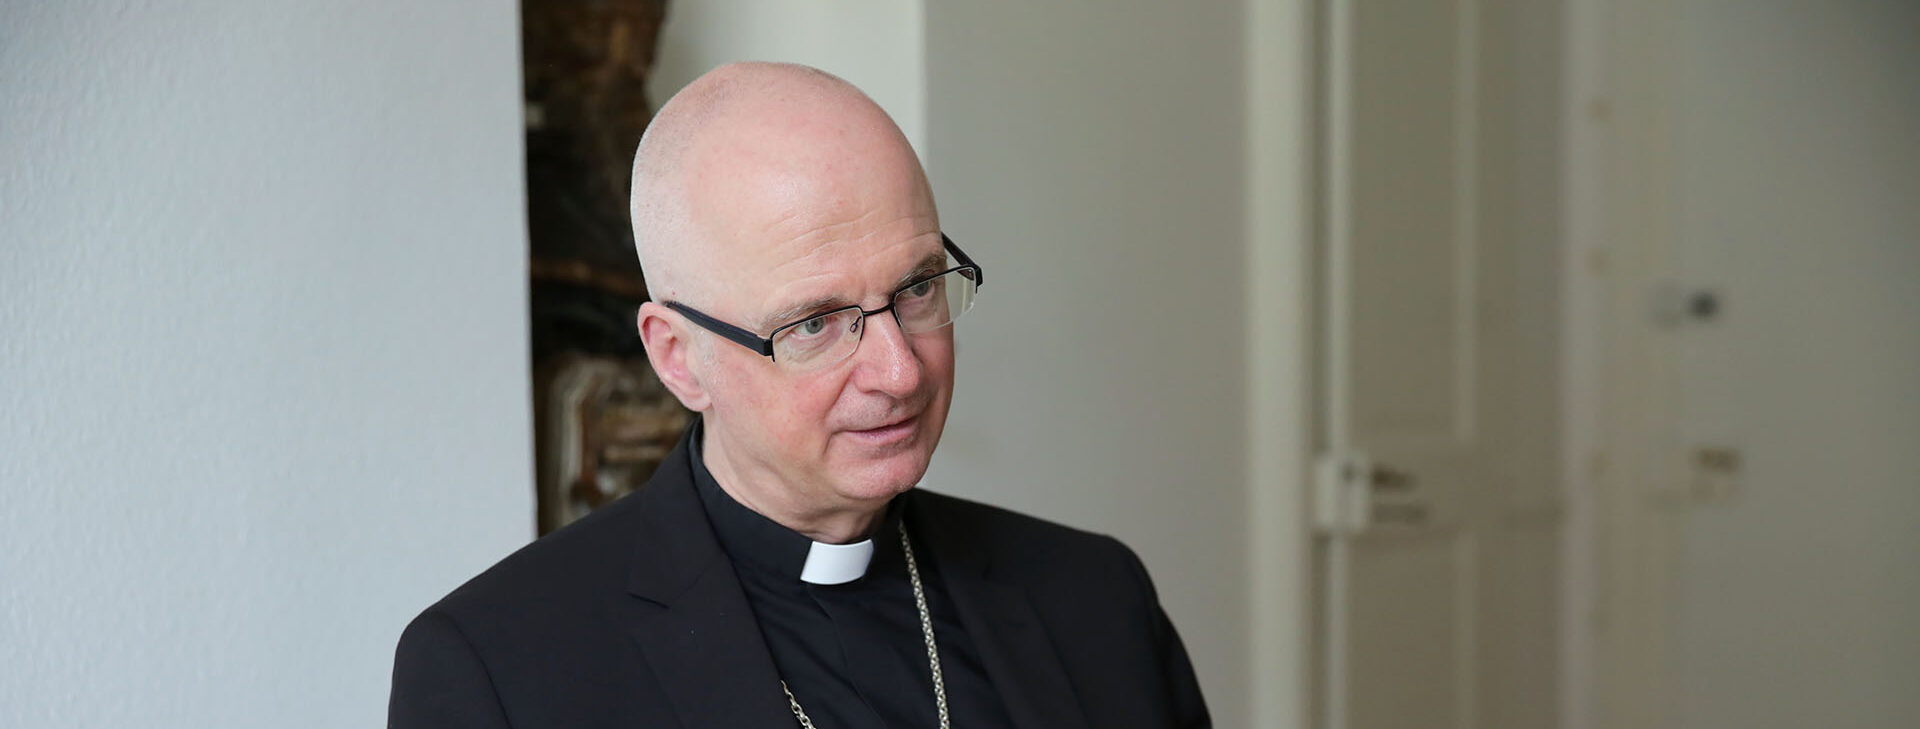 Mgr Charles Morerod assure qu'aucun dossier n'a été détruit depuis 20 ans dans le diocèse de LGF | © Bernard Hallet